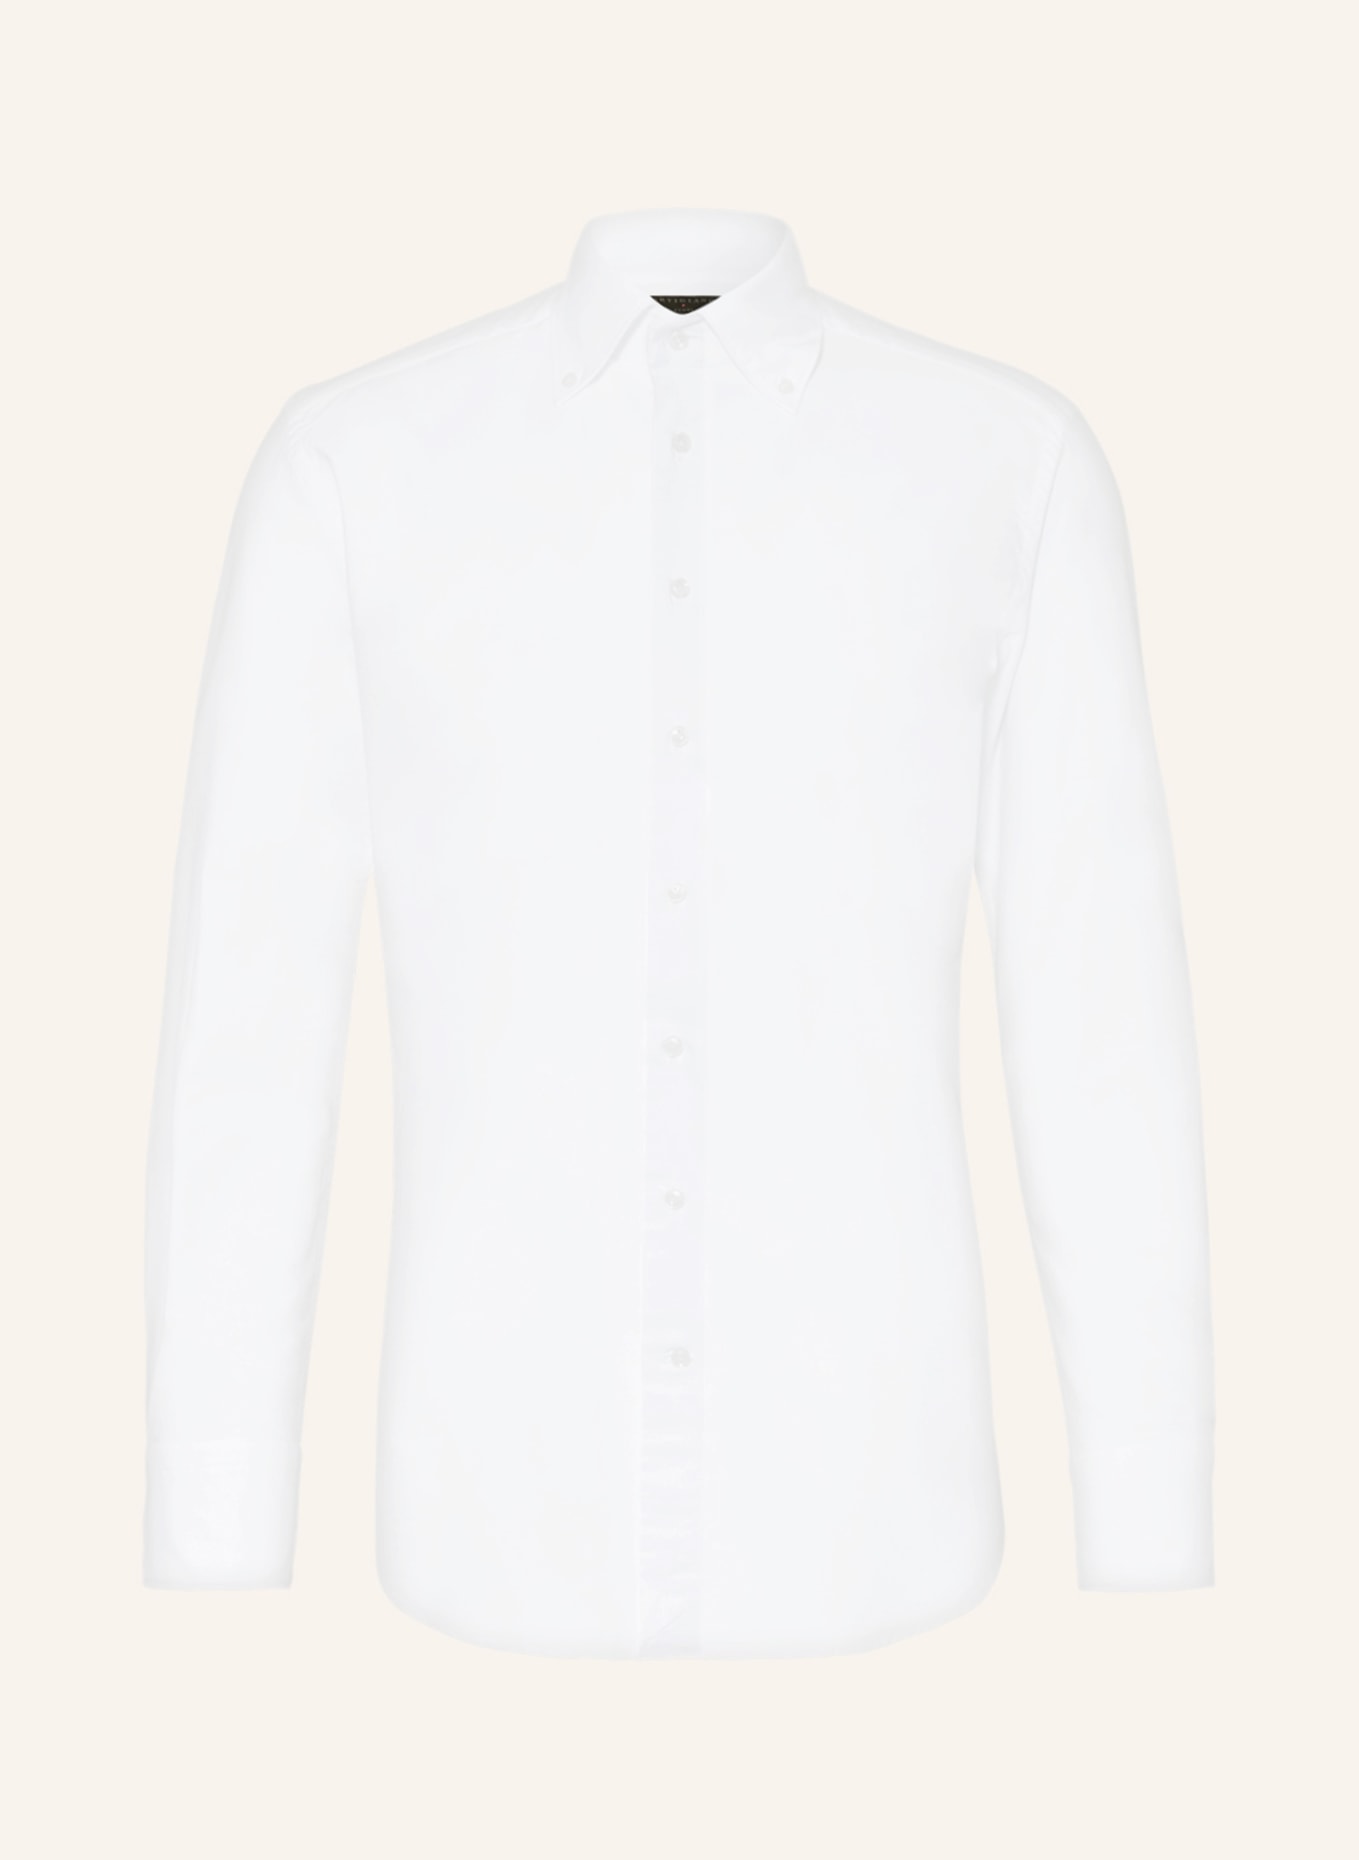 ARTIGIANO Shirt classic fit, Color: WHITE (Image 1)